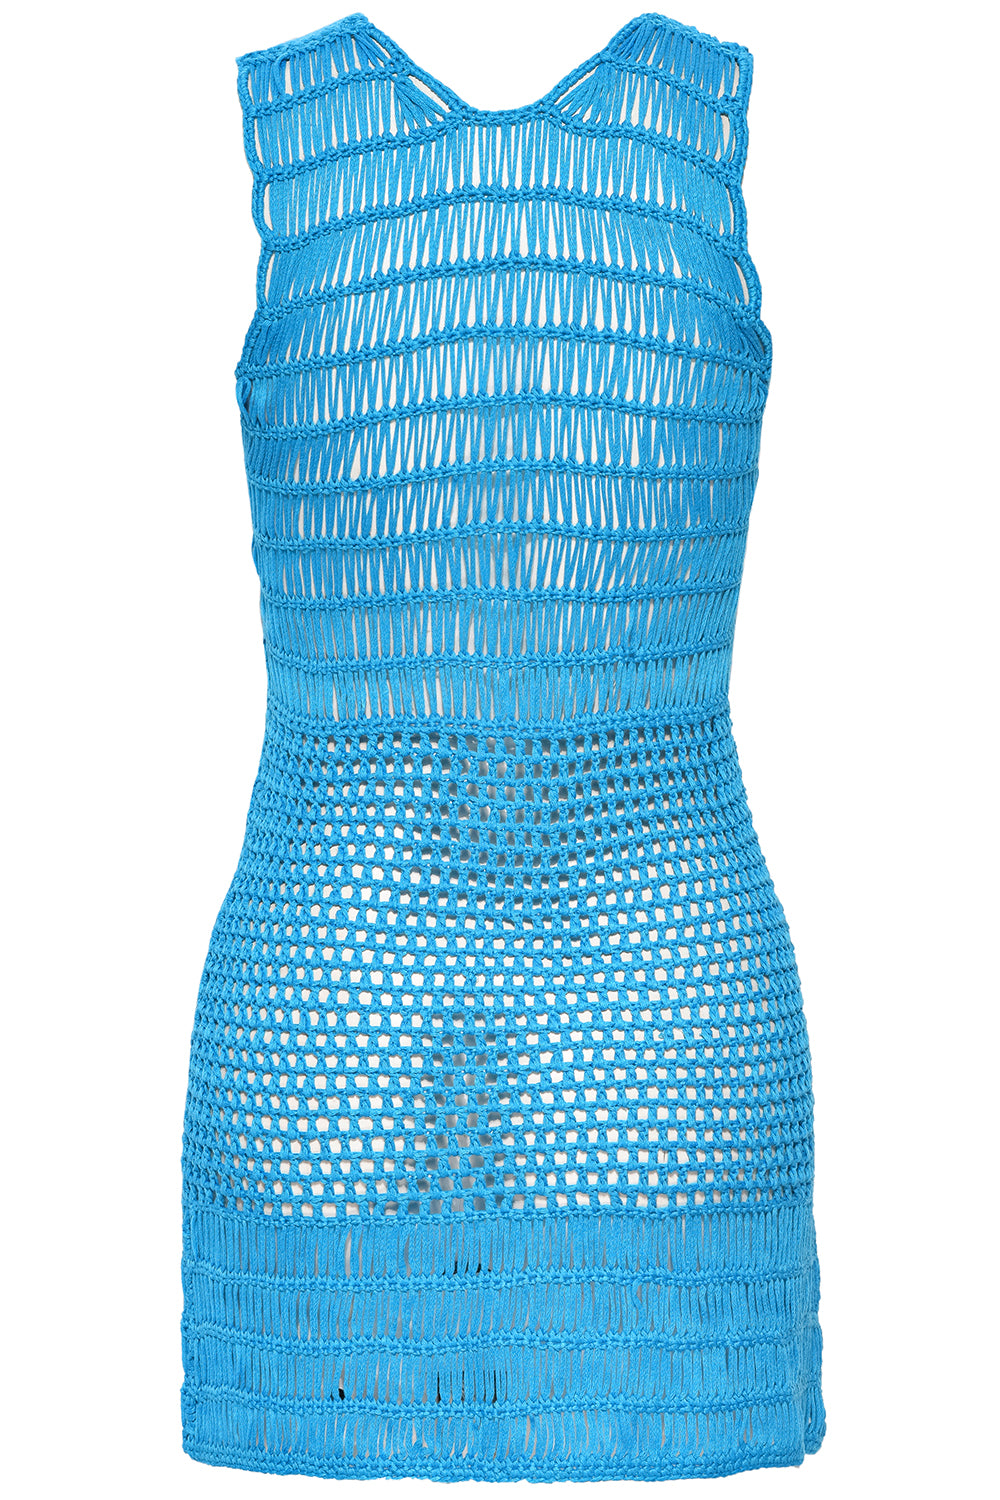 Crochet Blue Short Dress on white background back view.